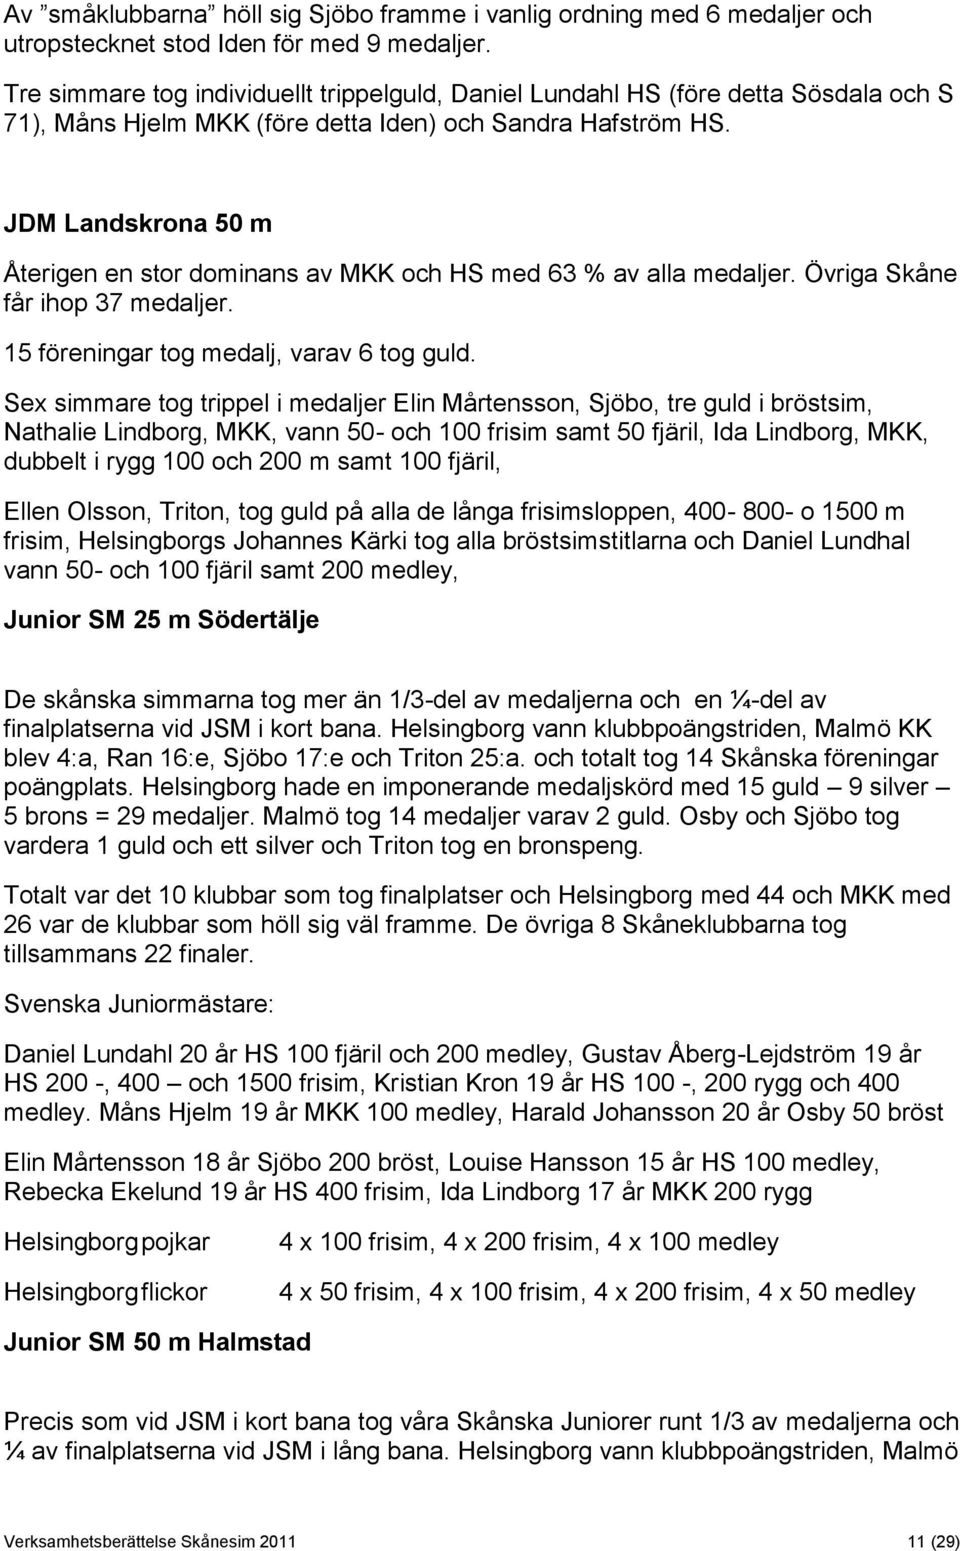 JDM Landskrona 50 m Återigen en stor dominans av MKK och HS med 63 % av alla medaljer. Övriga Skåne får ihop 37 medaljer. 15 föreningar tog medalj, varav 6 tog guld.